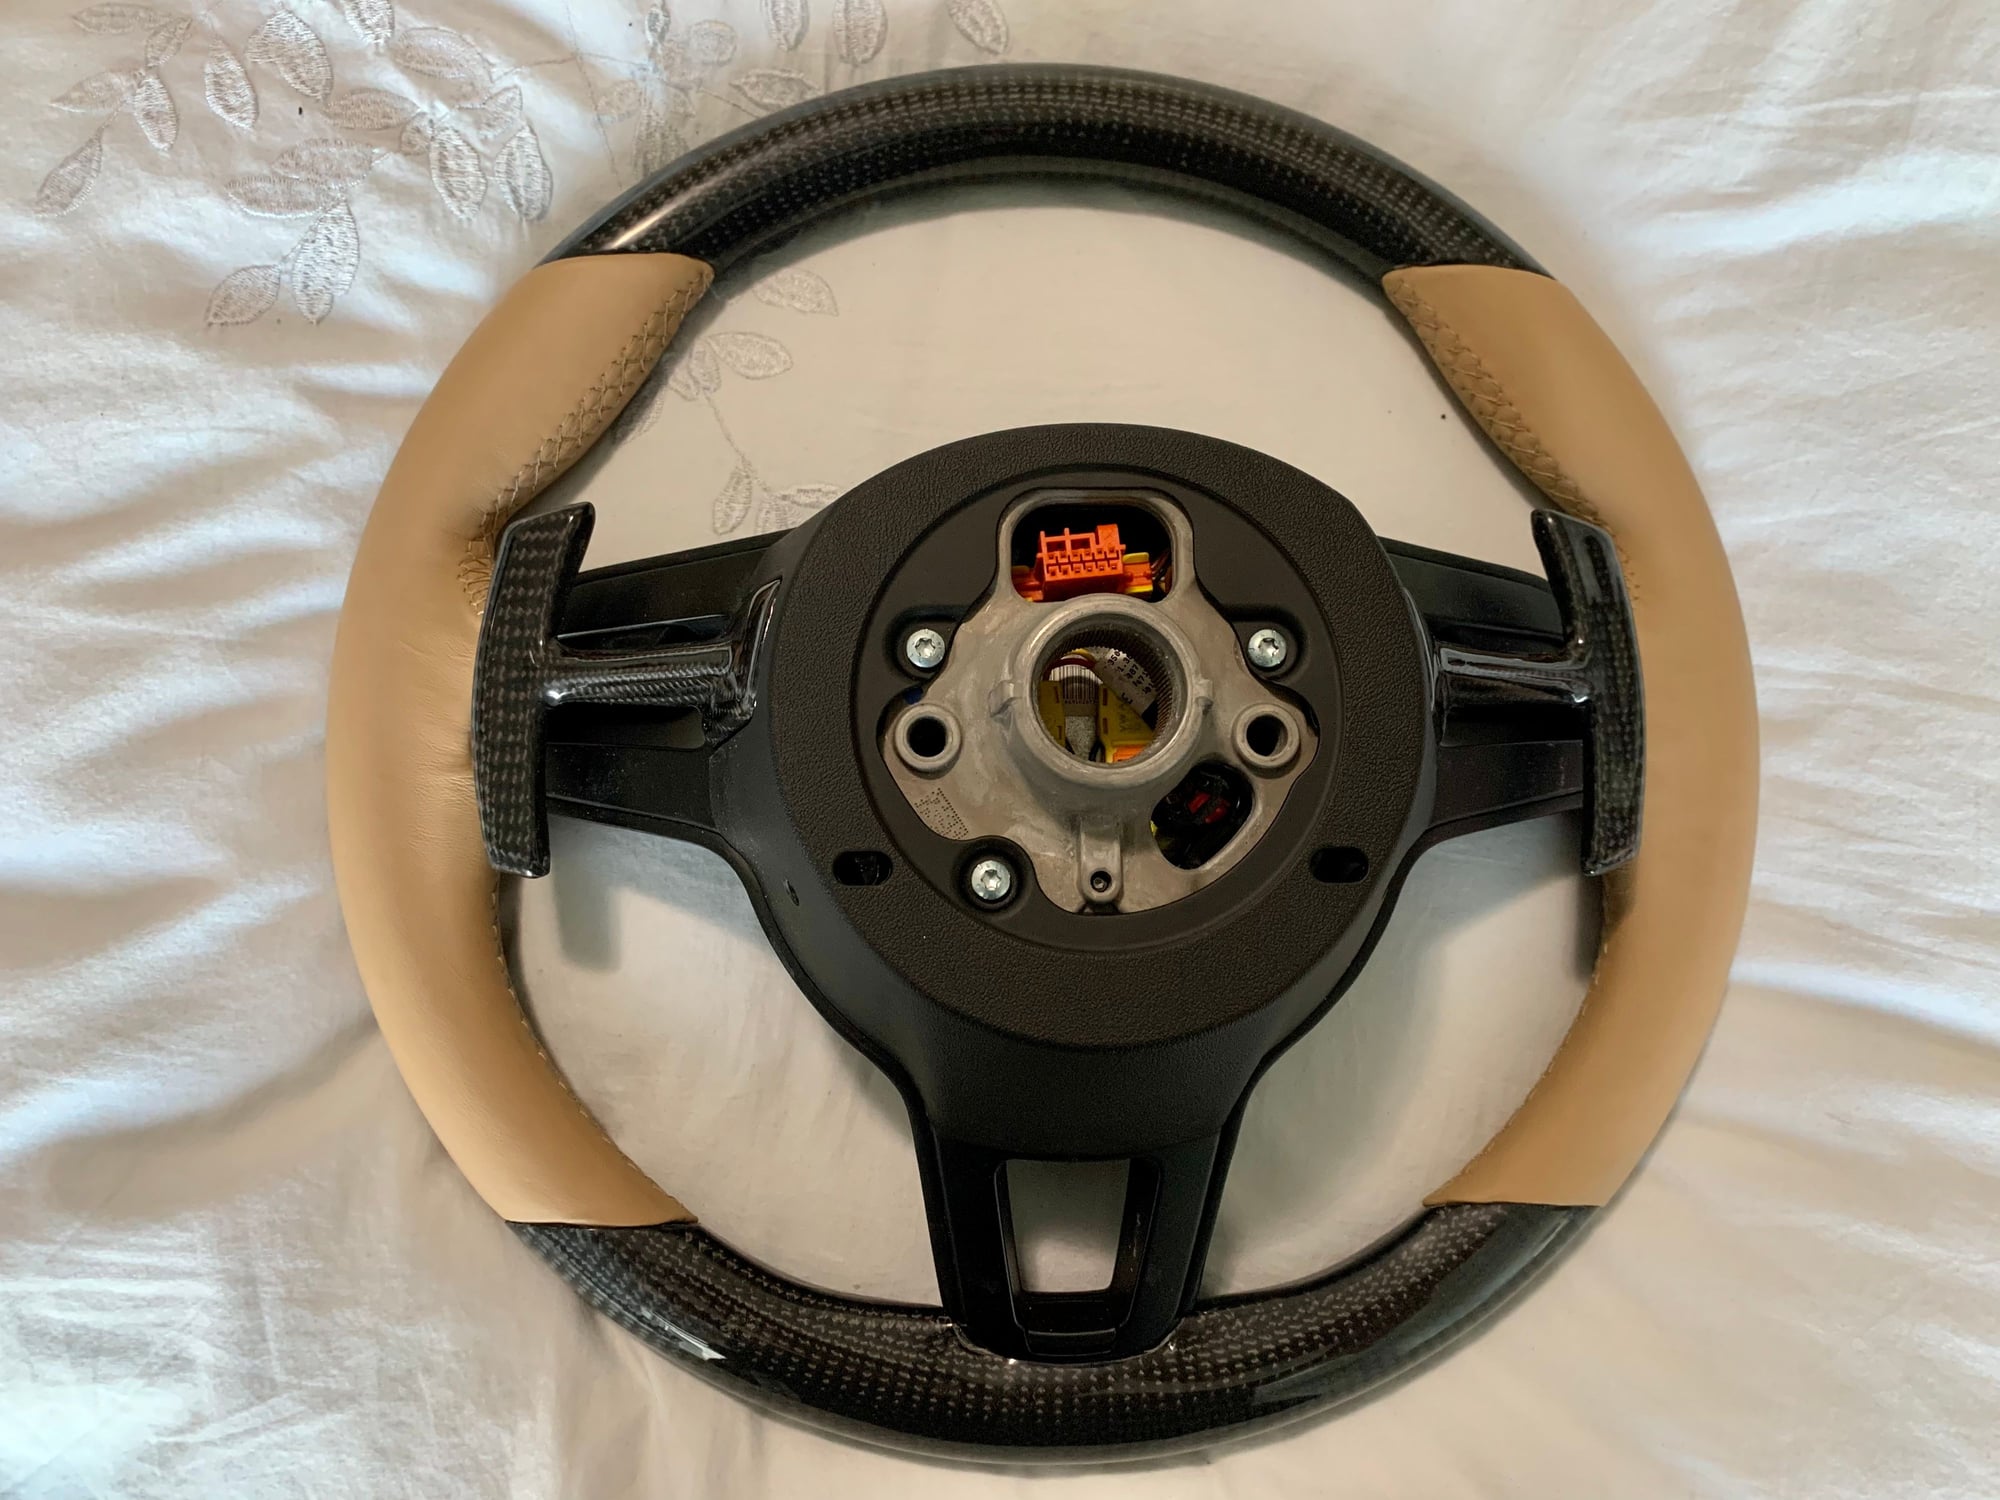 Steering/Suspension - Custom 991.2 Carbon Steering w Airbag (Sand beige) - New - 0  All Models - Brampton, ON L6Y6C5, Canada